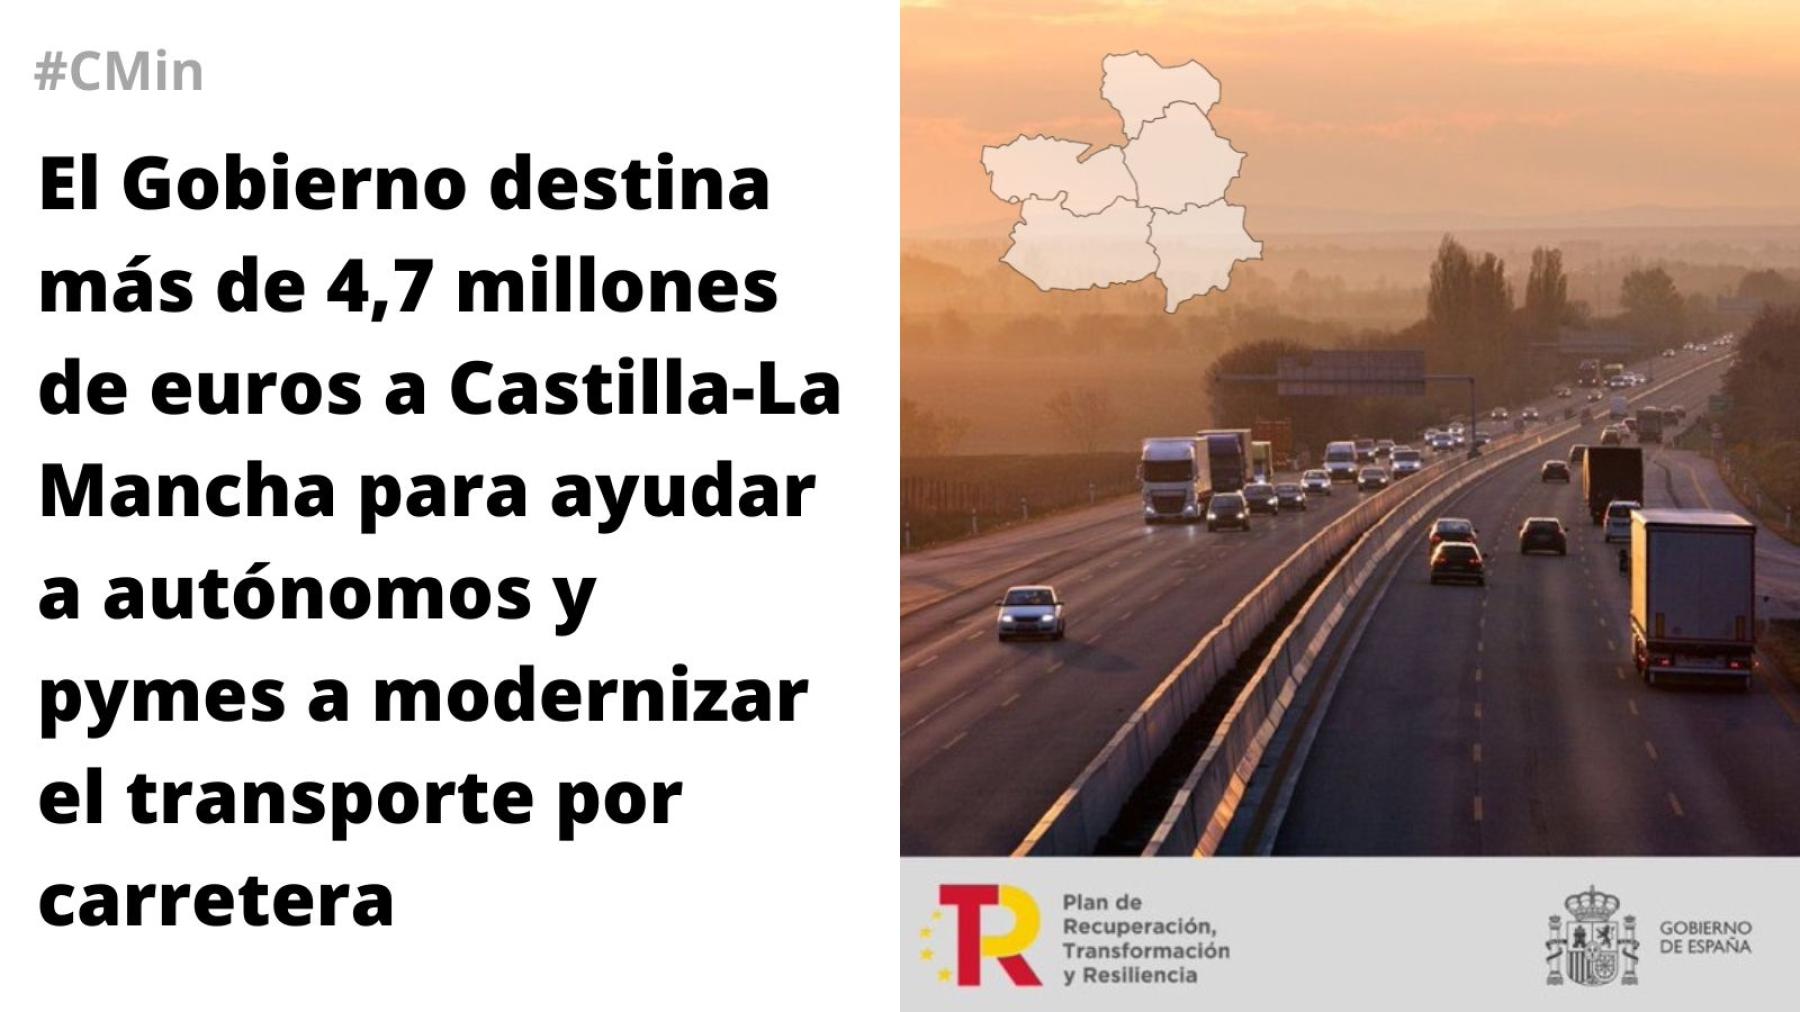 El Gobierno destina más de 4,7 millones de euros a Castilla-La Mancha para ayudar a autónomos y pymes a modernizar el transporte por carretera